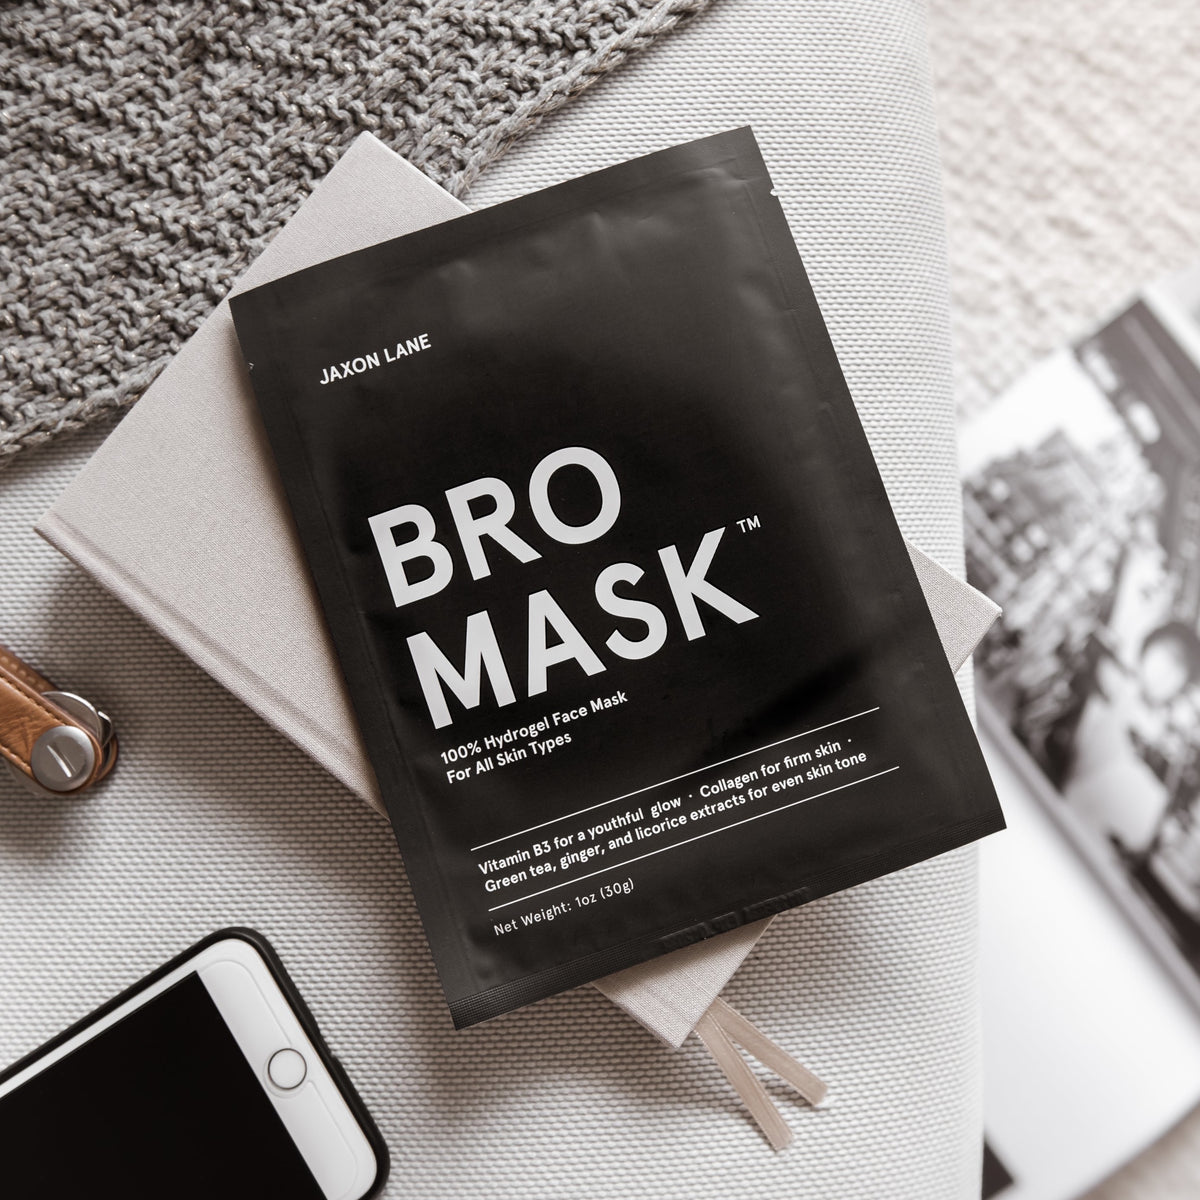 Bro Mask